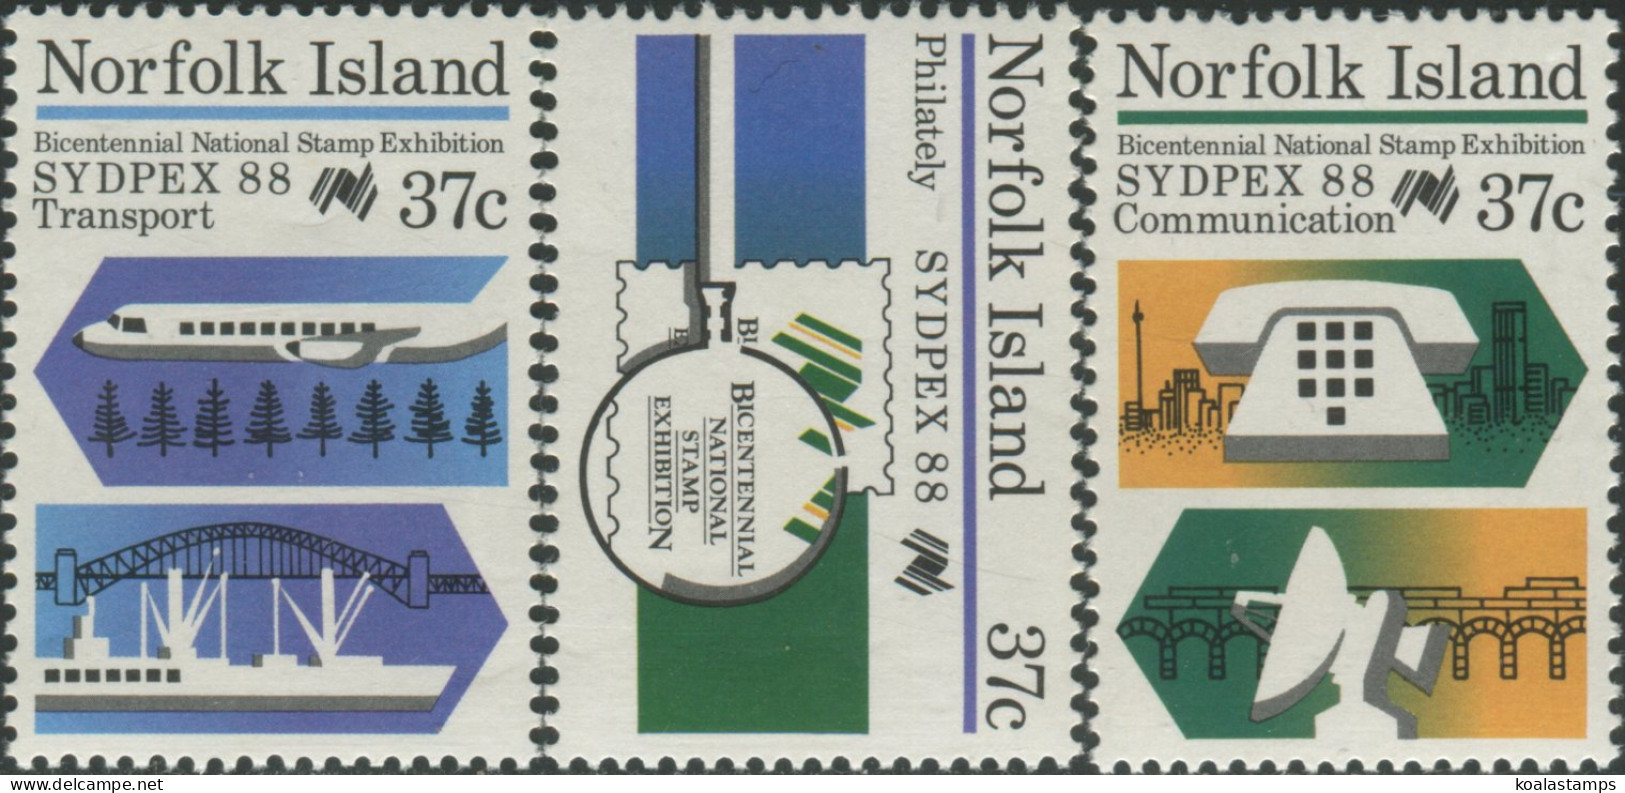 Norfolk Island 1988 SG444-446 Sydpex Stamp Exhibition Set MNH - Norfolk Island